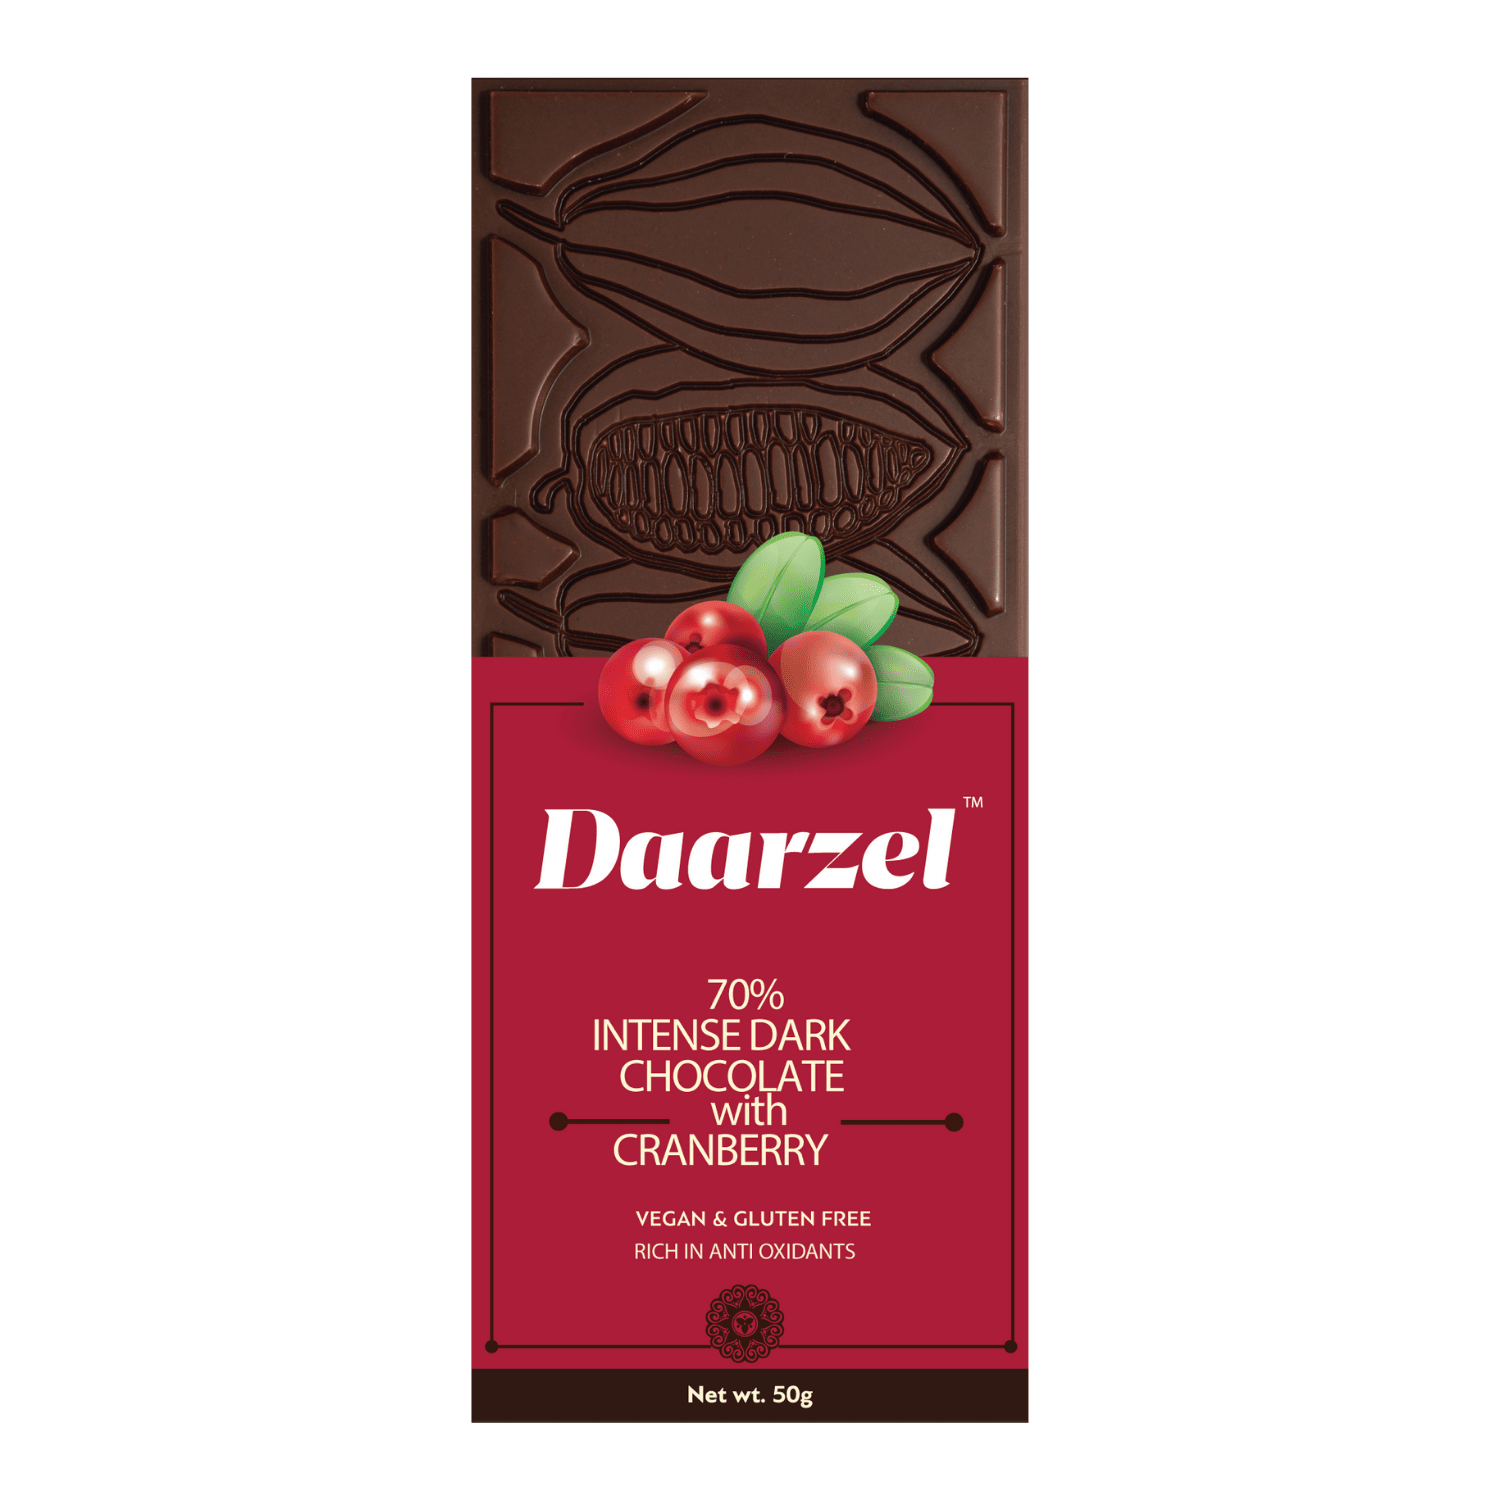 Daarzel  70 Intense Dark Chocolate with Cranberry  Vegan & Gluten Free  50 g